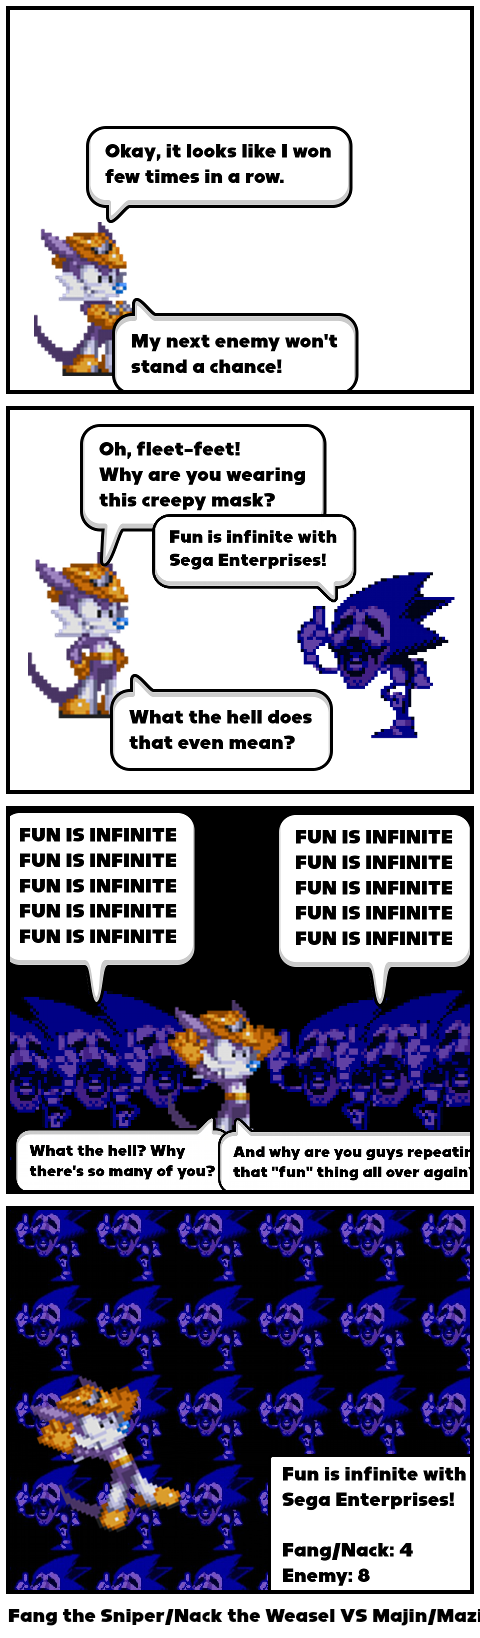 Fun is infinite with Sega Enterprises - Majin 